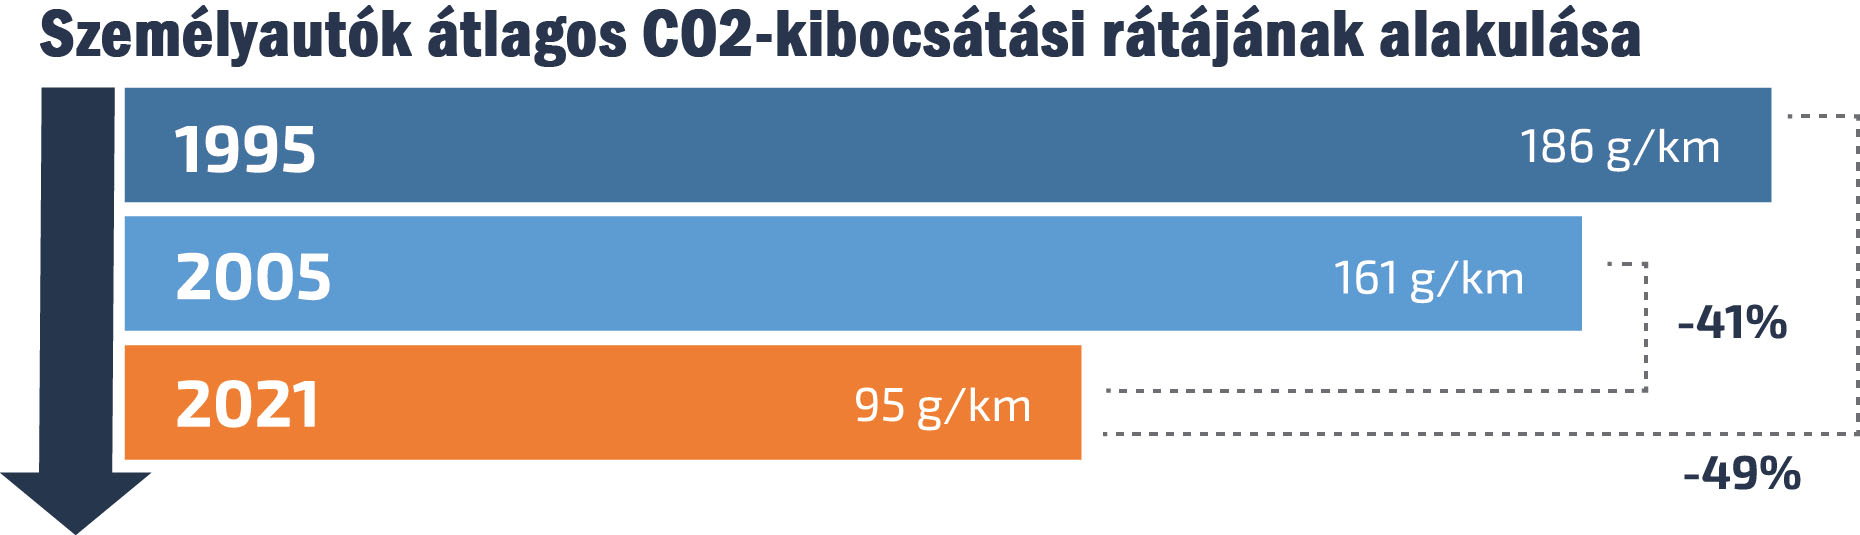 személyautók átlagos CO2-kibocsátási rátájának alakulása